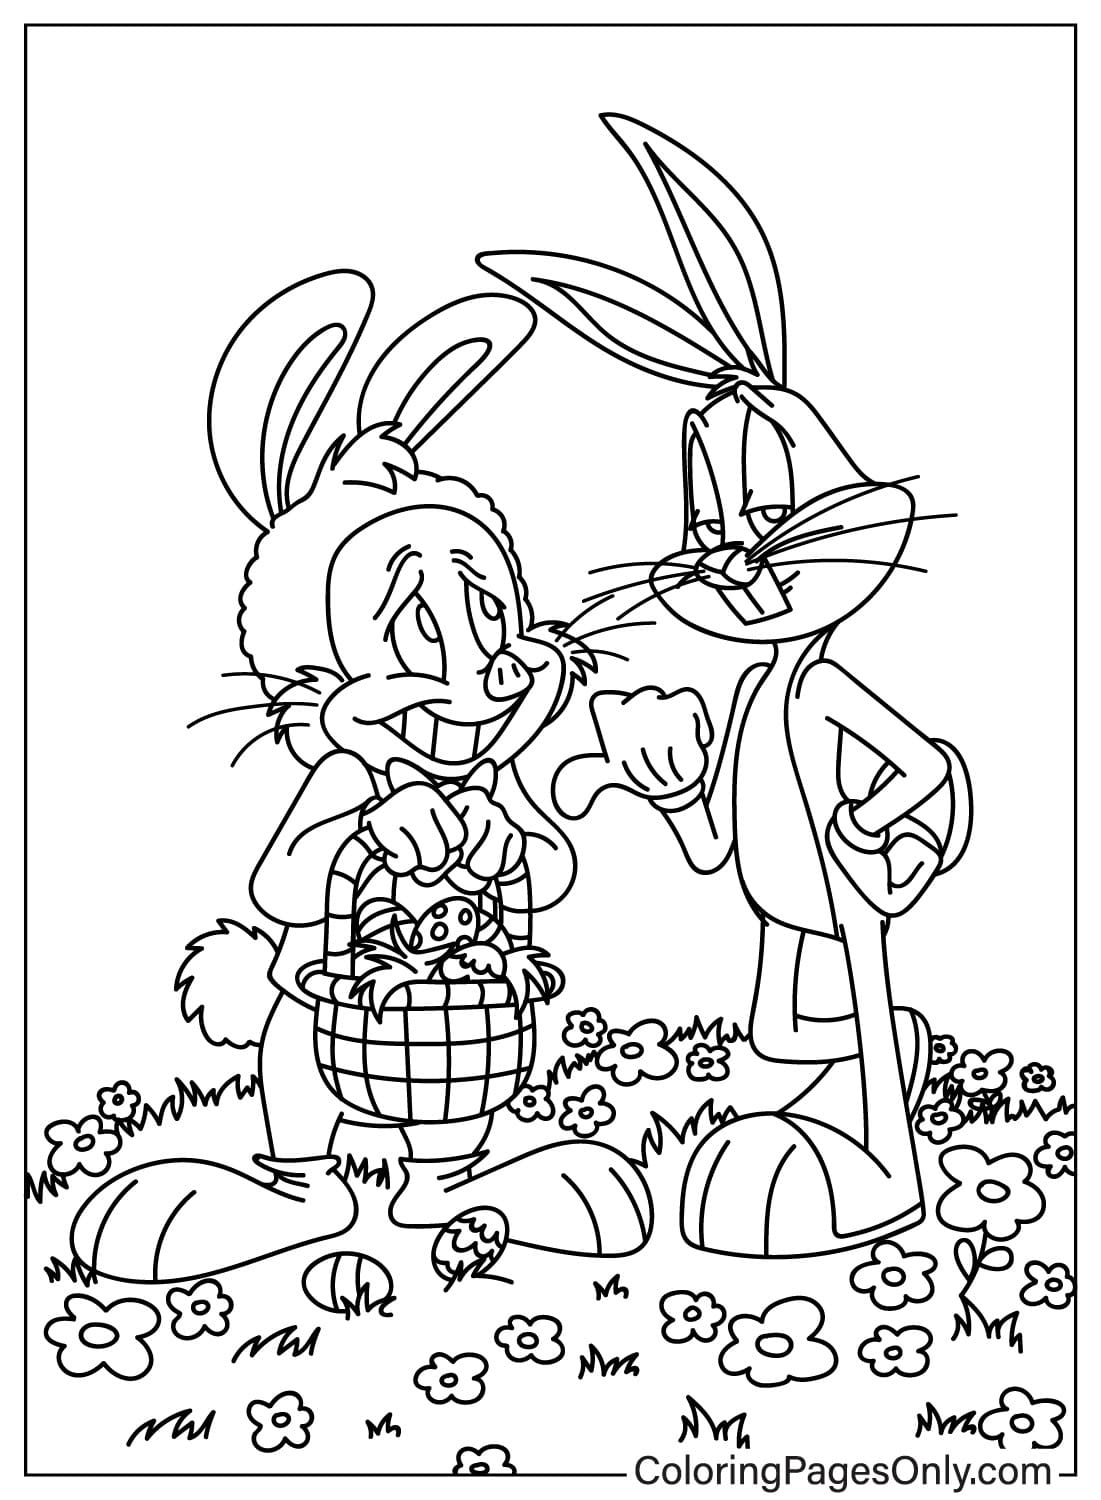 Página para colorir do coelhinho da Páscoa do desenho animado da Páscoa